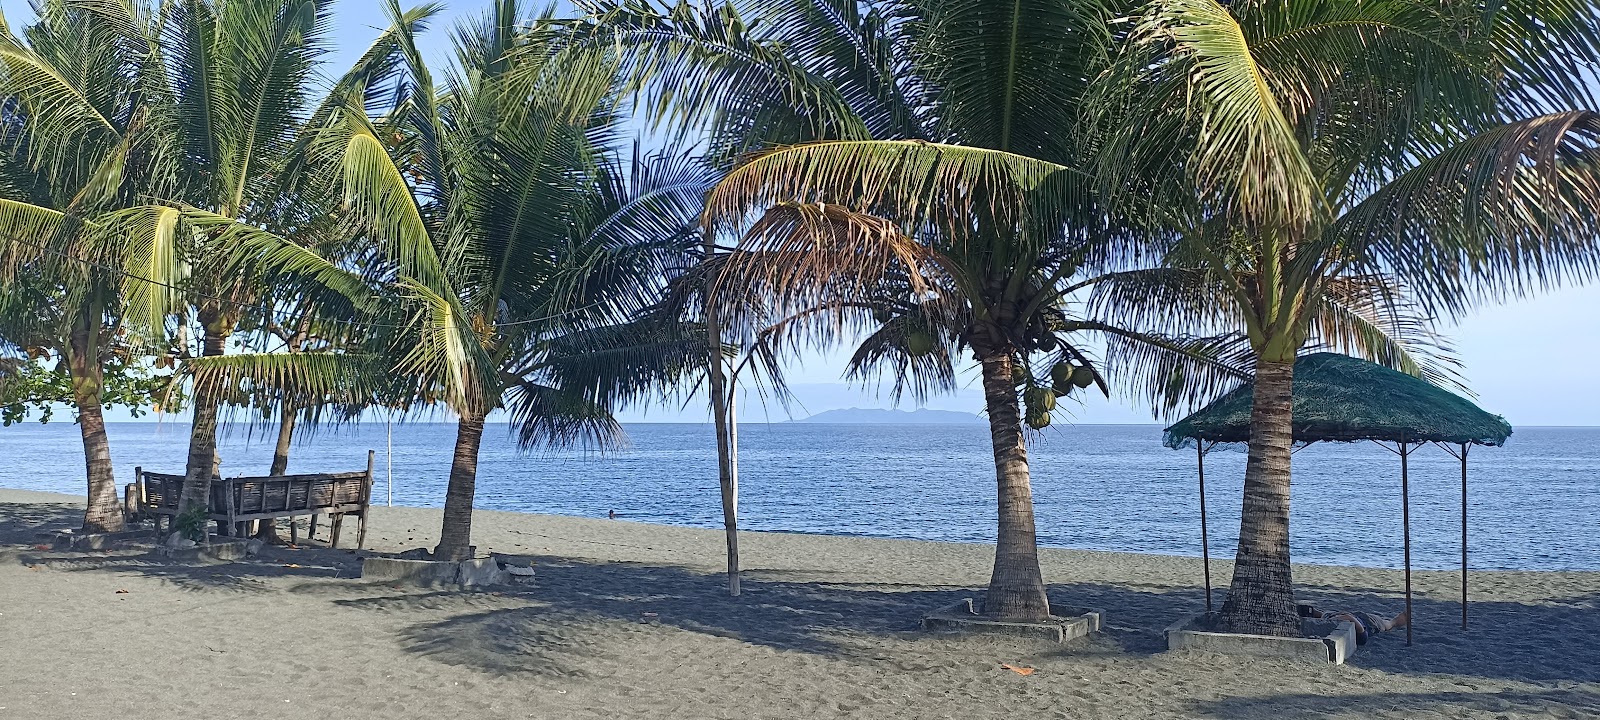 Foto von Pinamalayan Beach - beliebter Ort unter Entspannungskennern